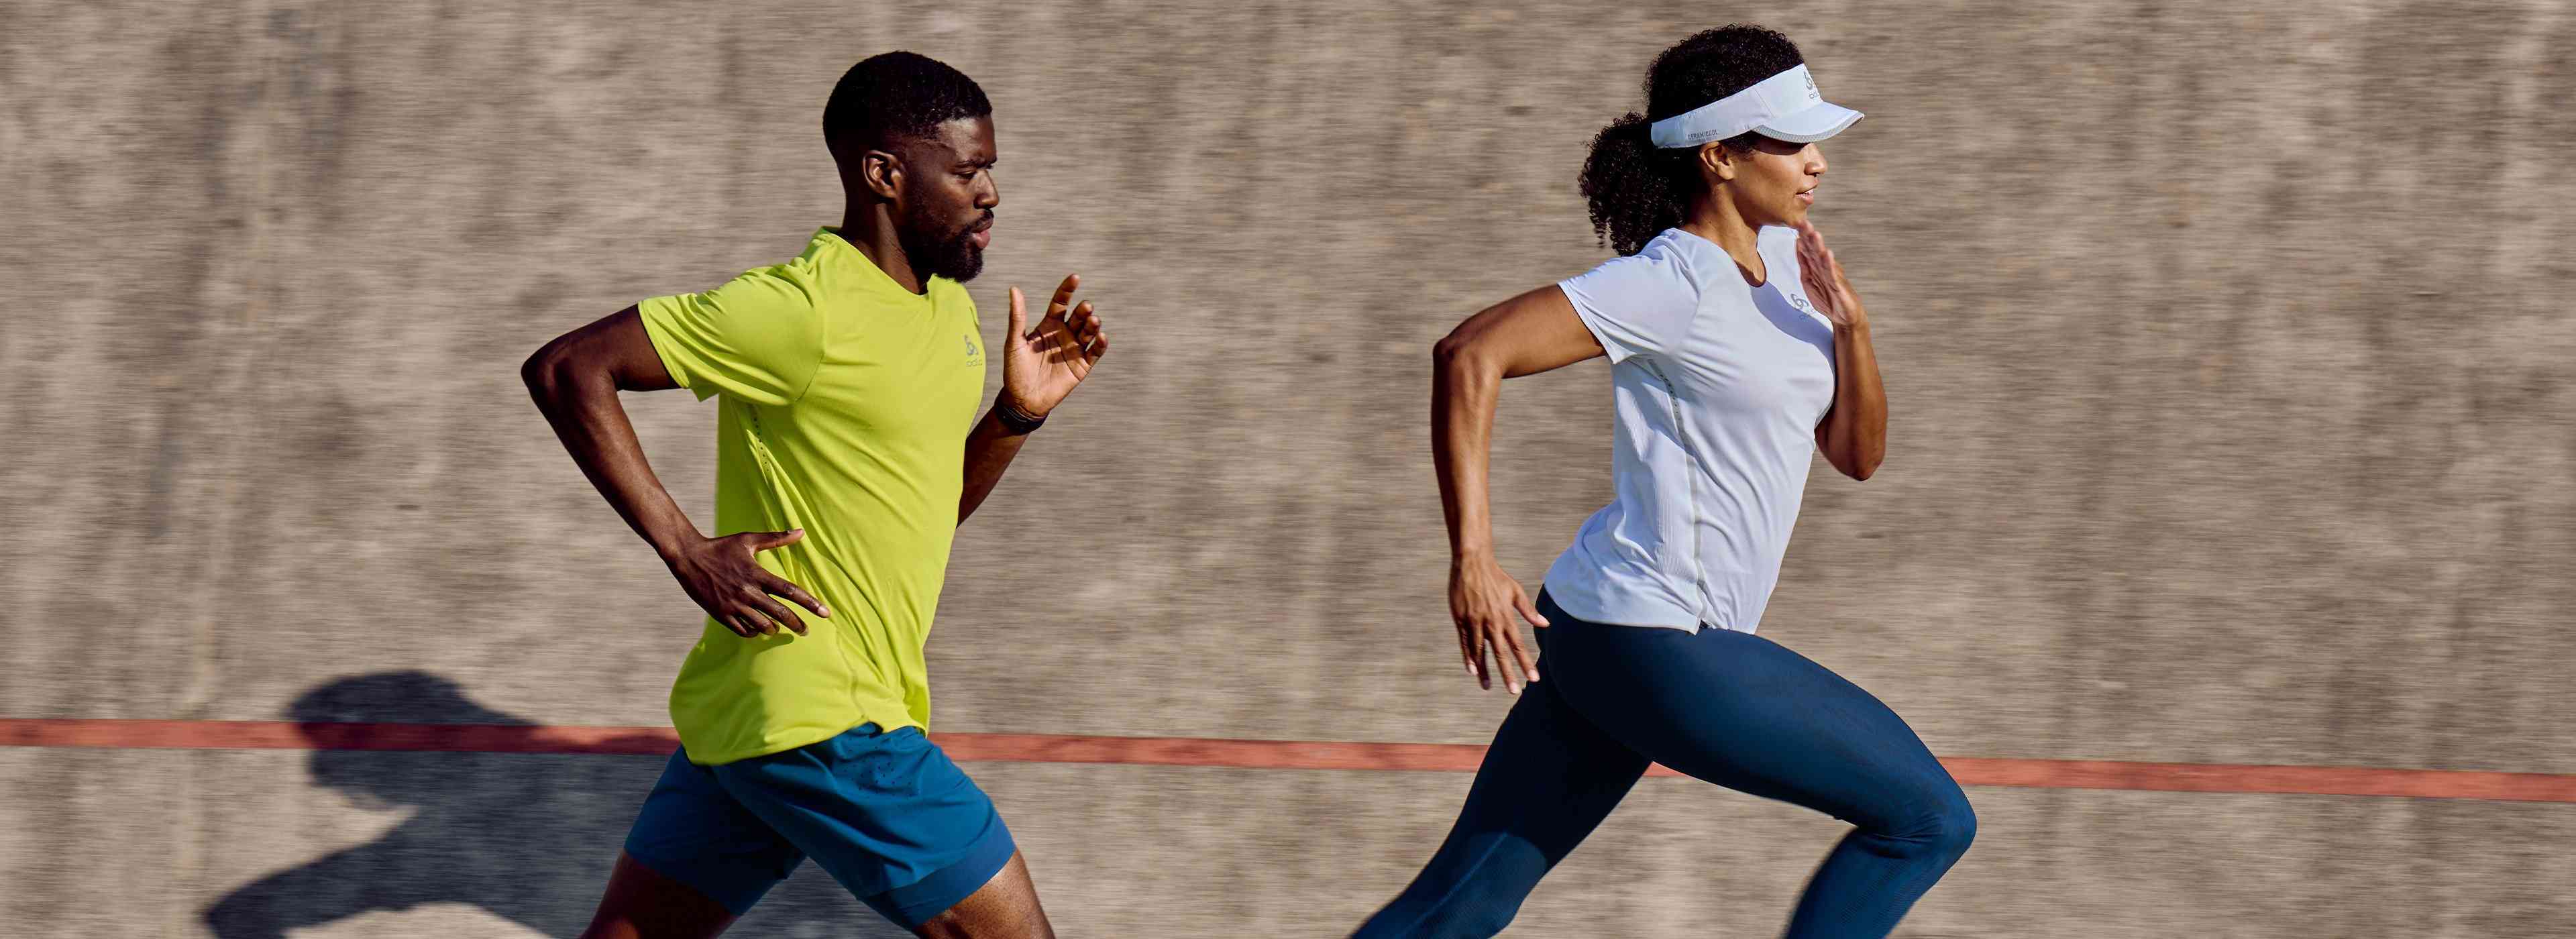 a man and a woman running, each wearing light summer running gear